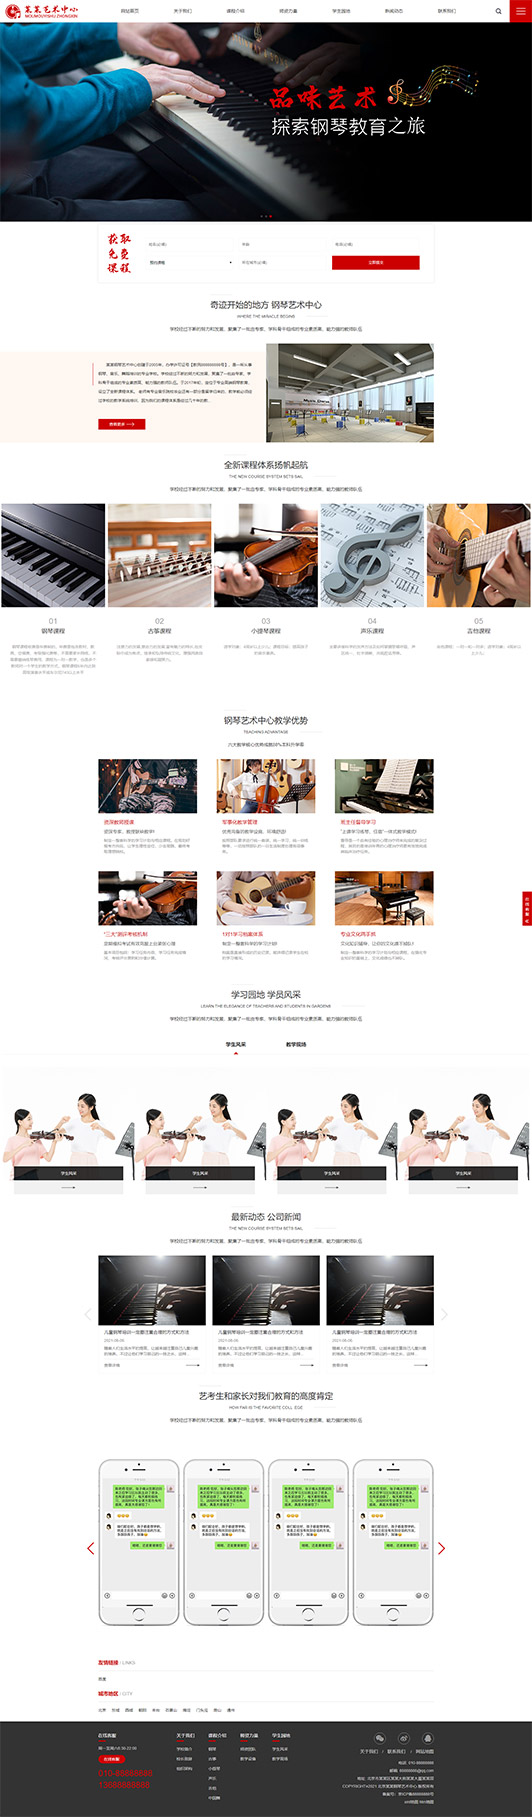 眉山钢琴艺术培训公司响应式企业网站